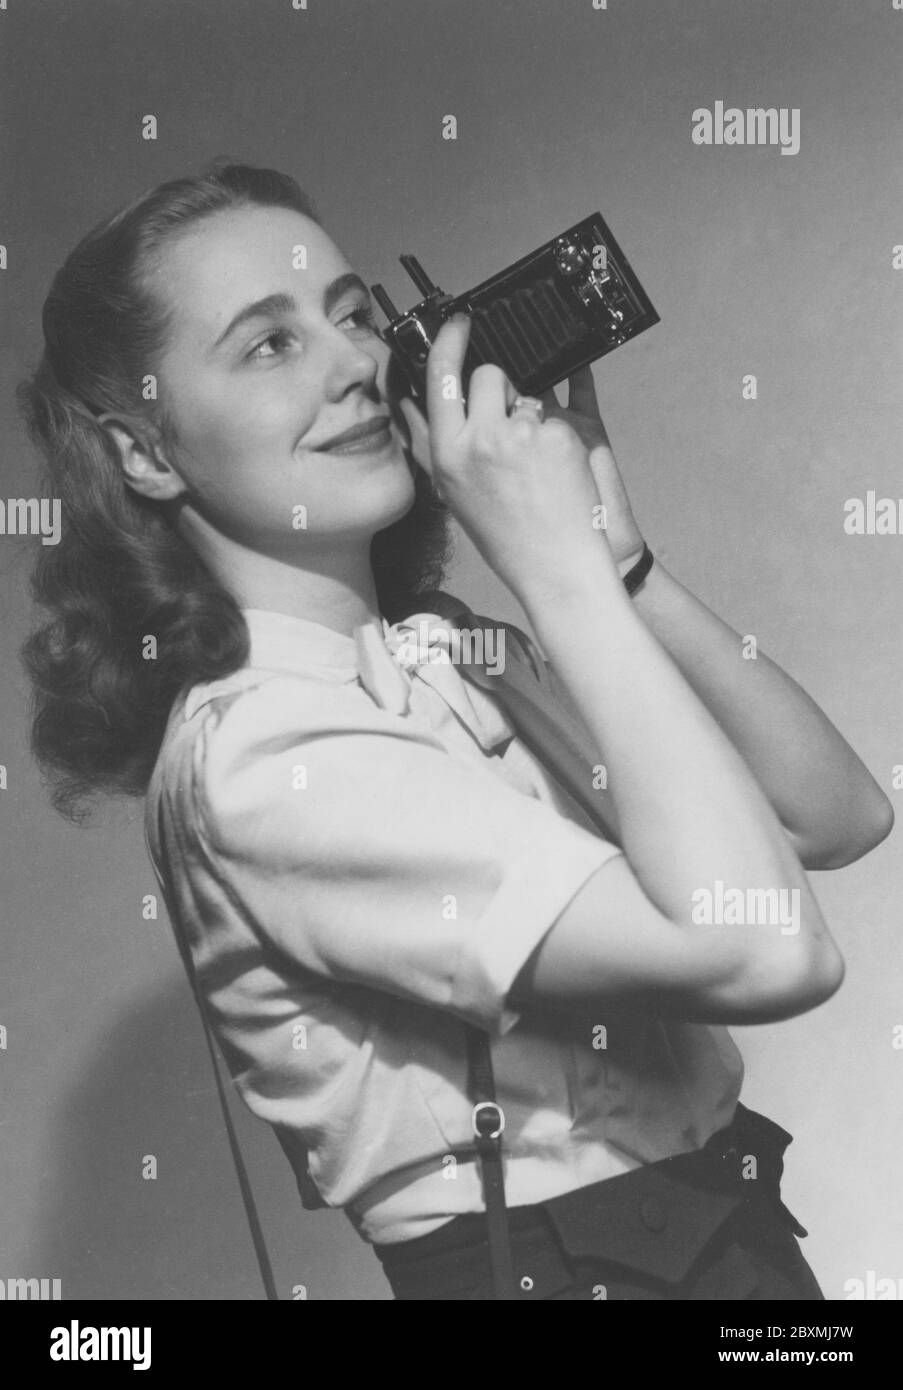 Photographe amateur dans les années 1940. Une jeune femme photographie un jour d'été. Le modèle de caméra est pratique. Lorsque vous ne l'utilisez pas, le bras et le soufflet sont repliés dans le boîtier de l'appareil photo. Pour prendre des photos, vous l'avez ouvert et vous êtes prêt à partir. La caméra a produit un film analogique. Margareta von Törne est photographié et la photographie a été utilisée à l'origine sur la couverture d'un livre appelé Manuel pour le photographe amateur 1948. Banque D'Images